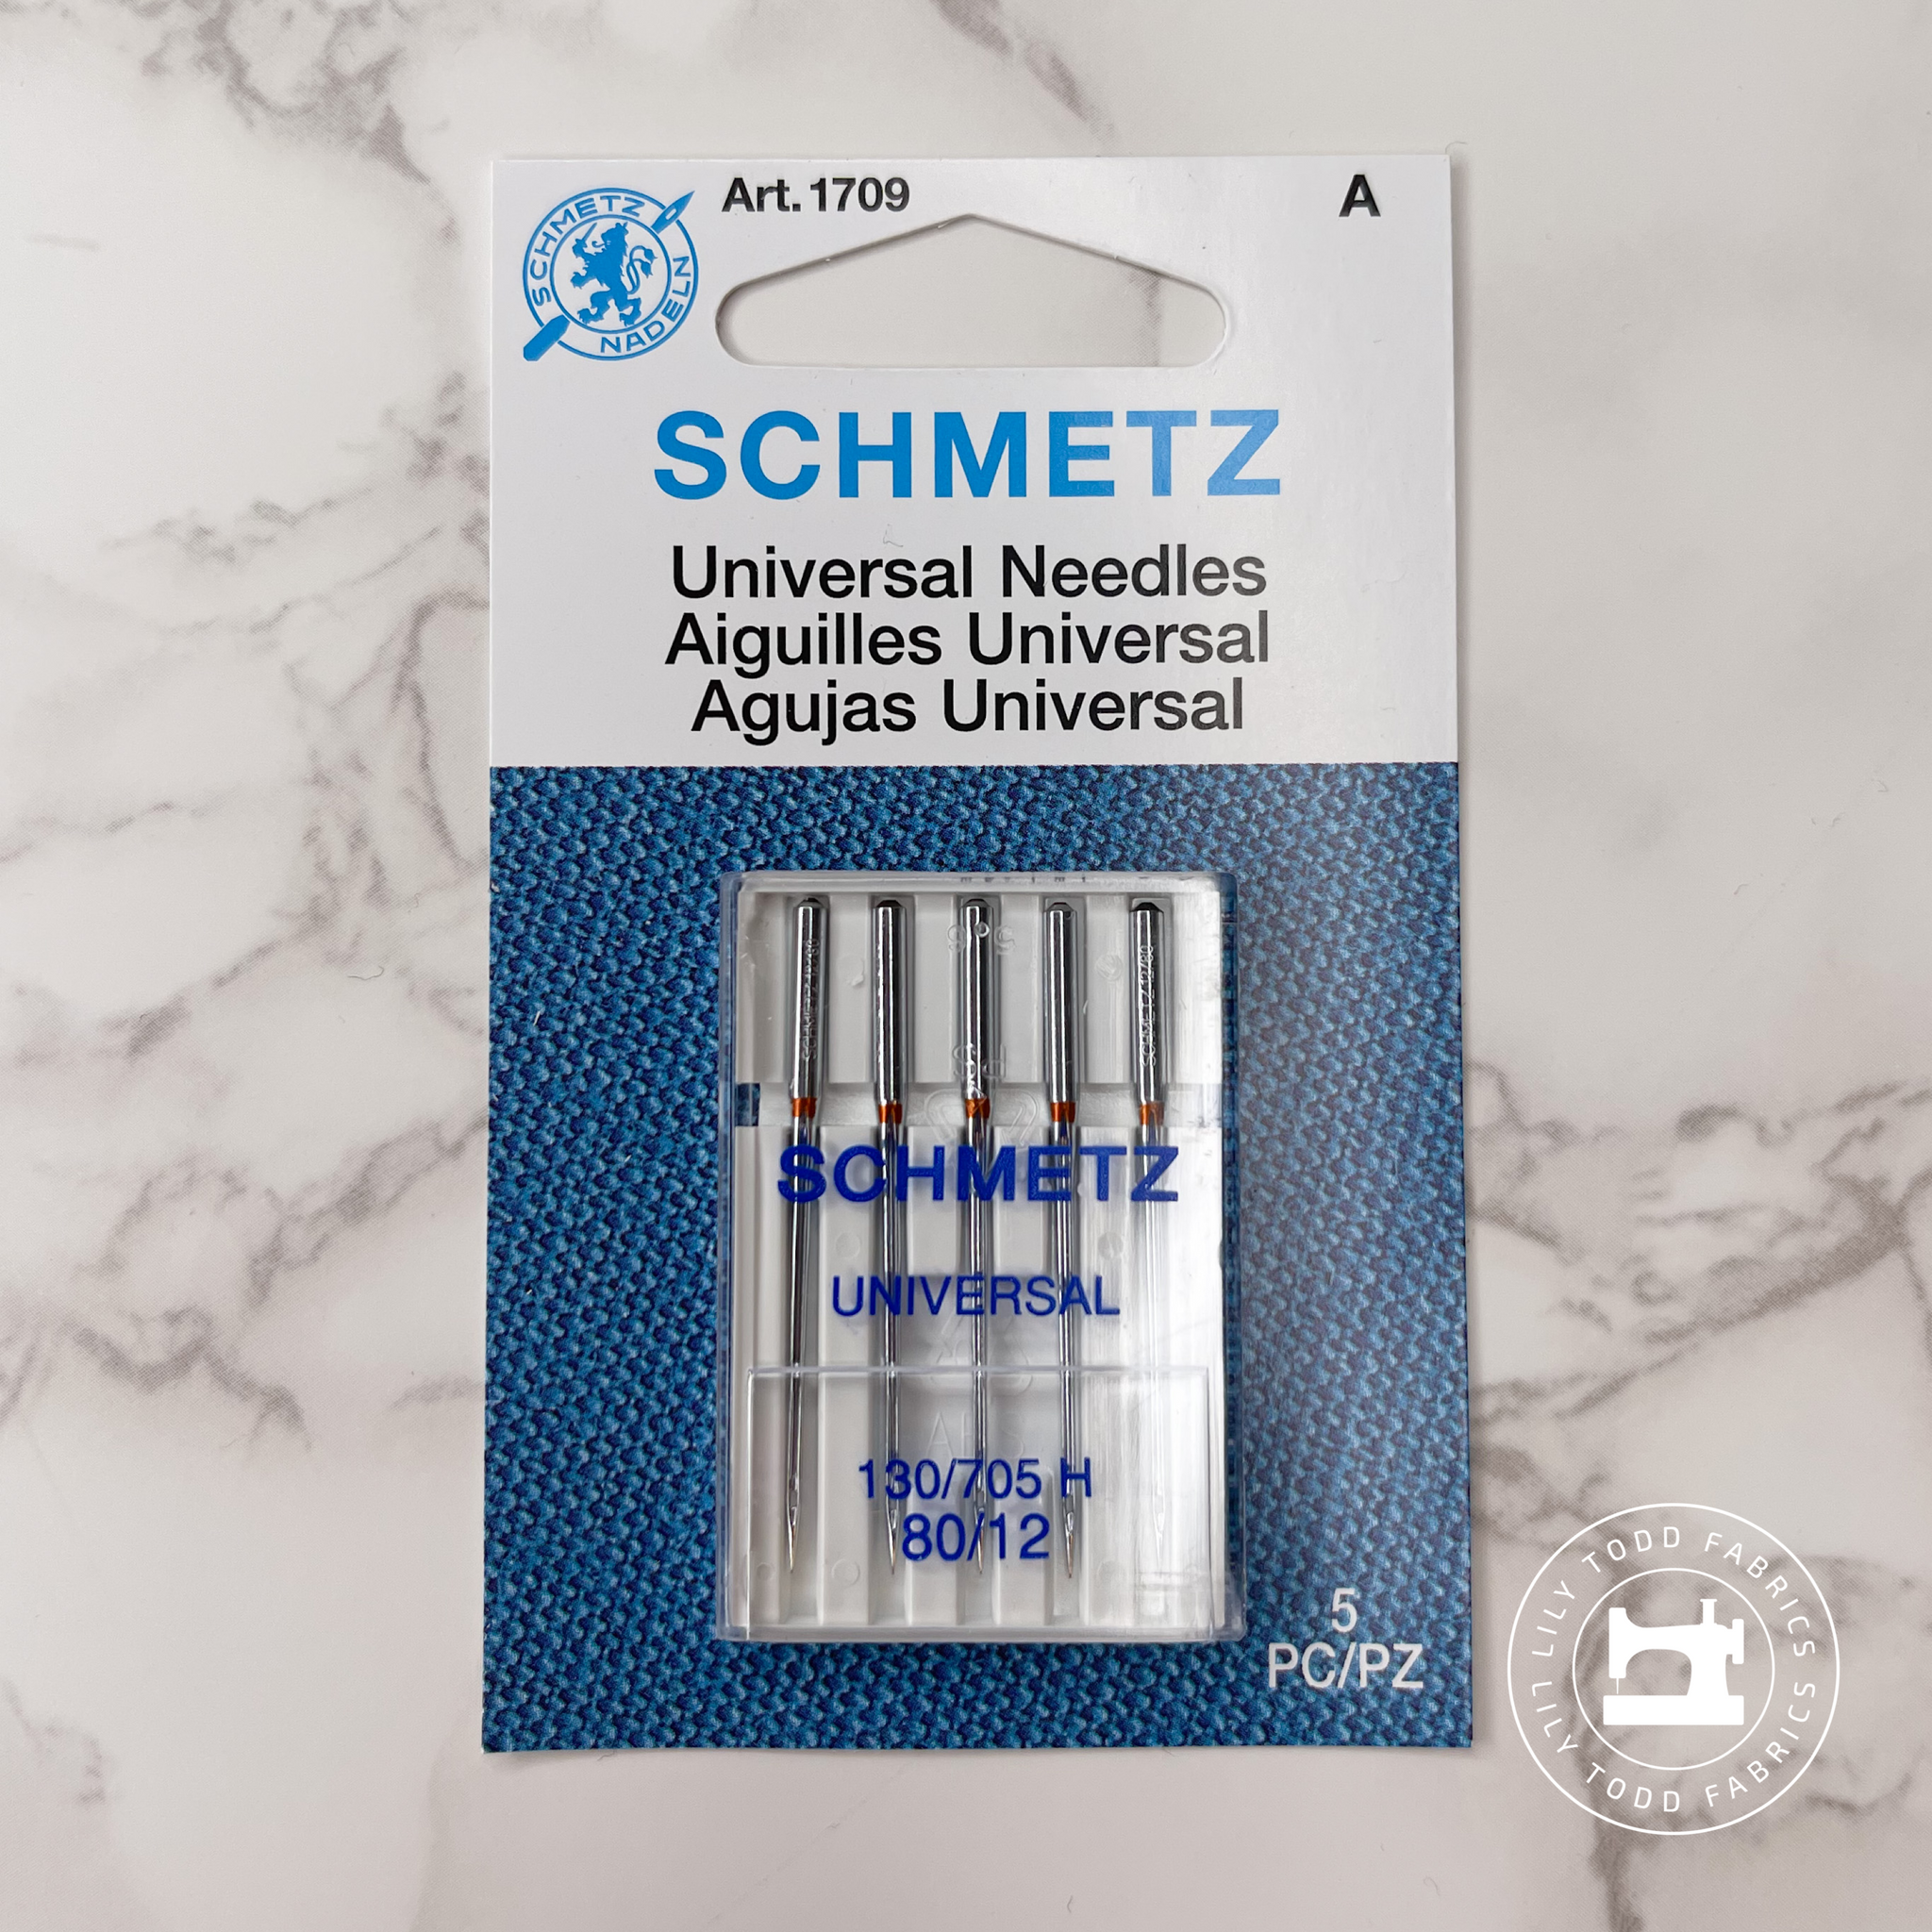 Schmetz Universal Machine Needles - Size 80/12